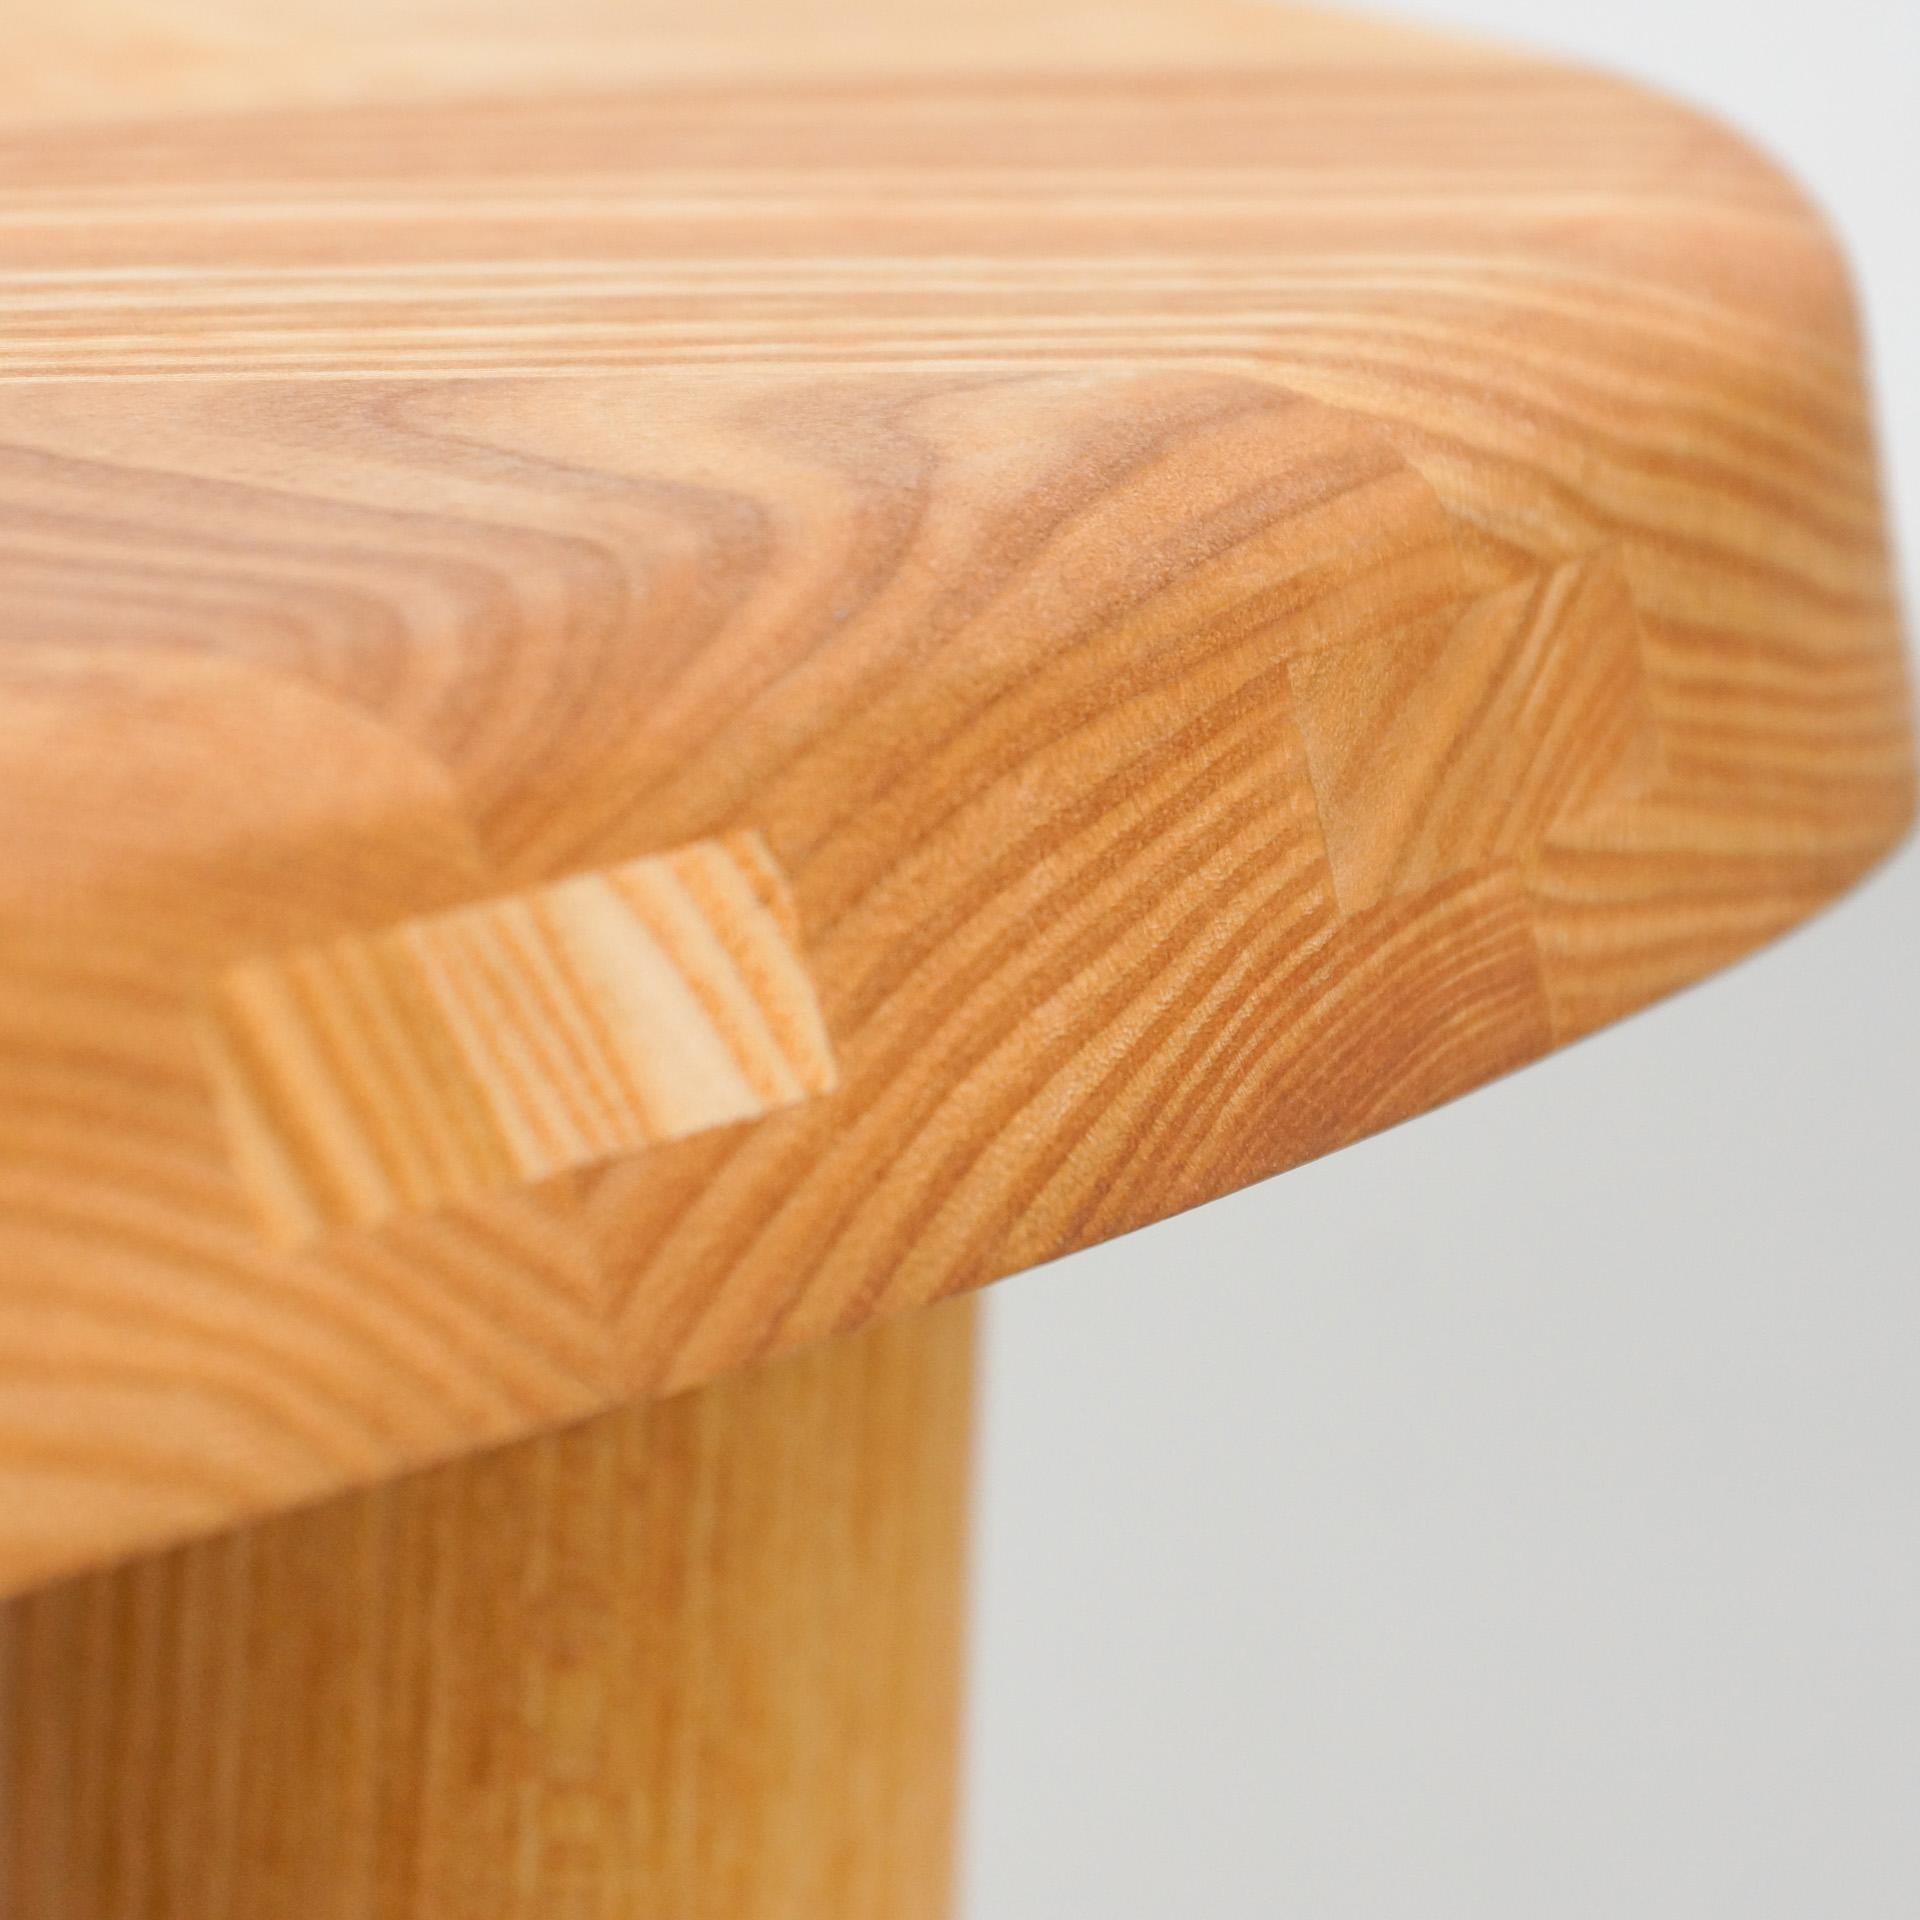 Pierre Chapo T23 Solid Elm Wood Formalist Side Table 2